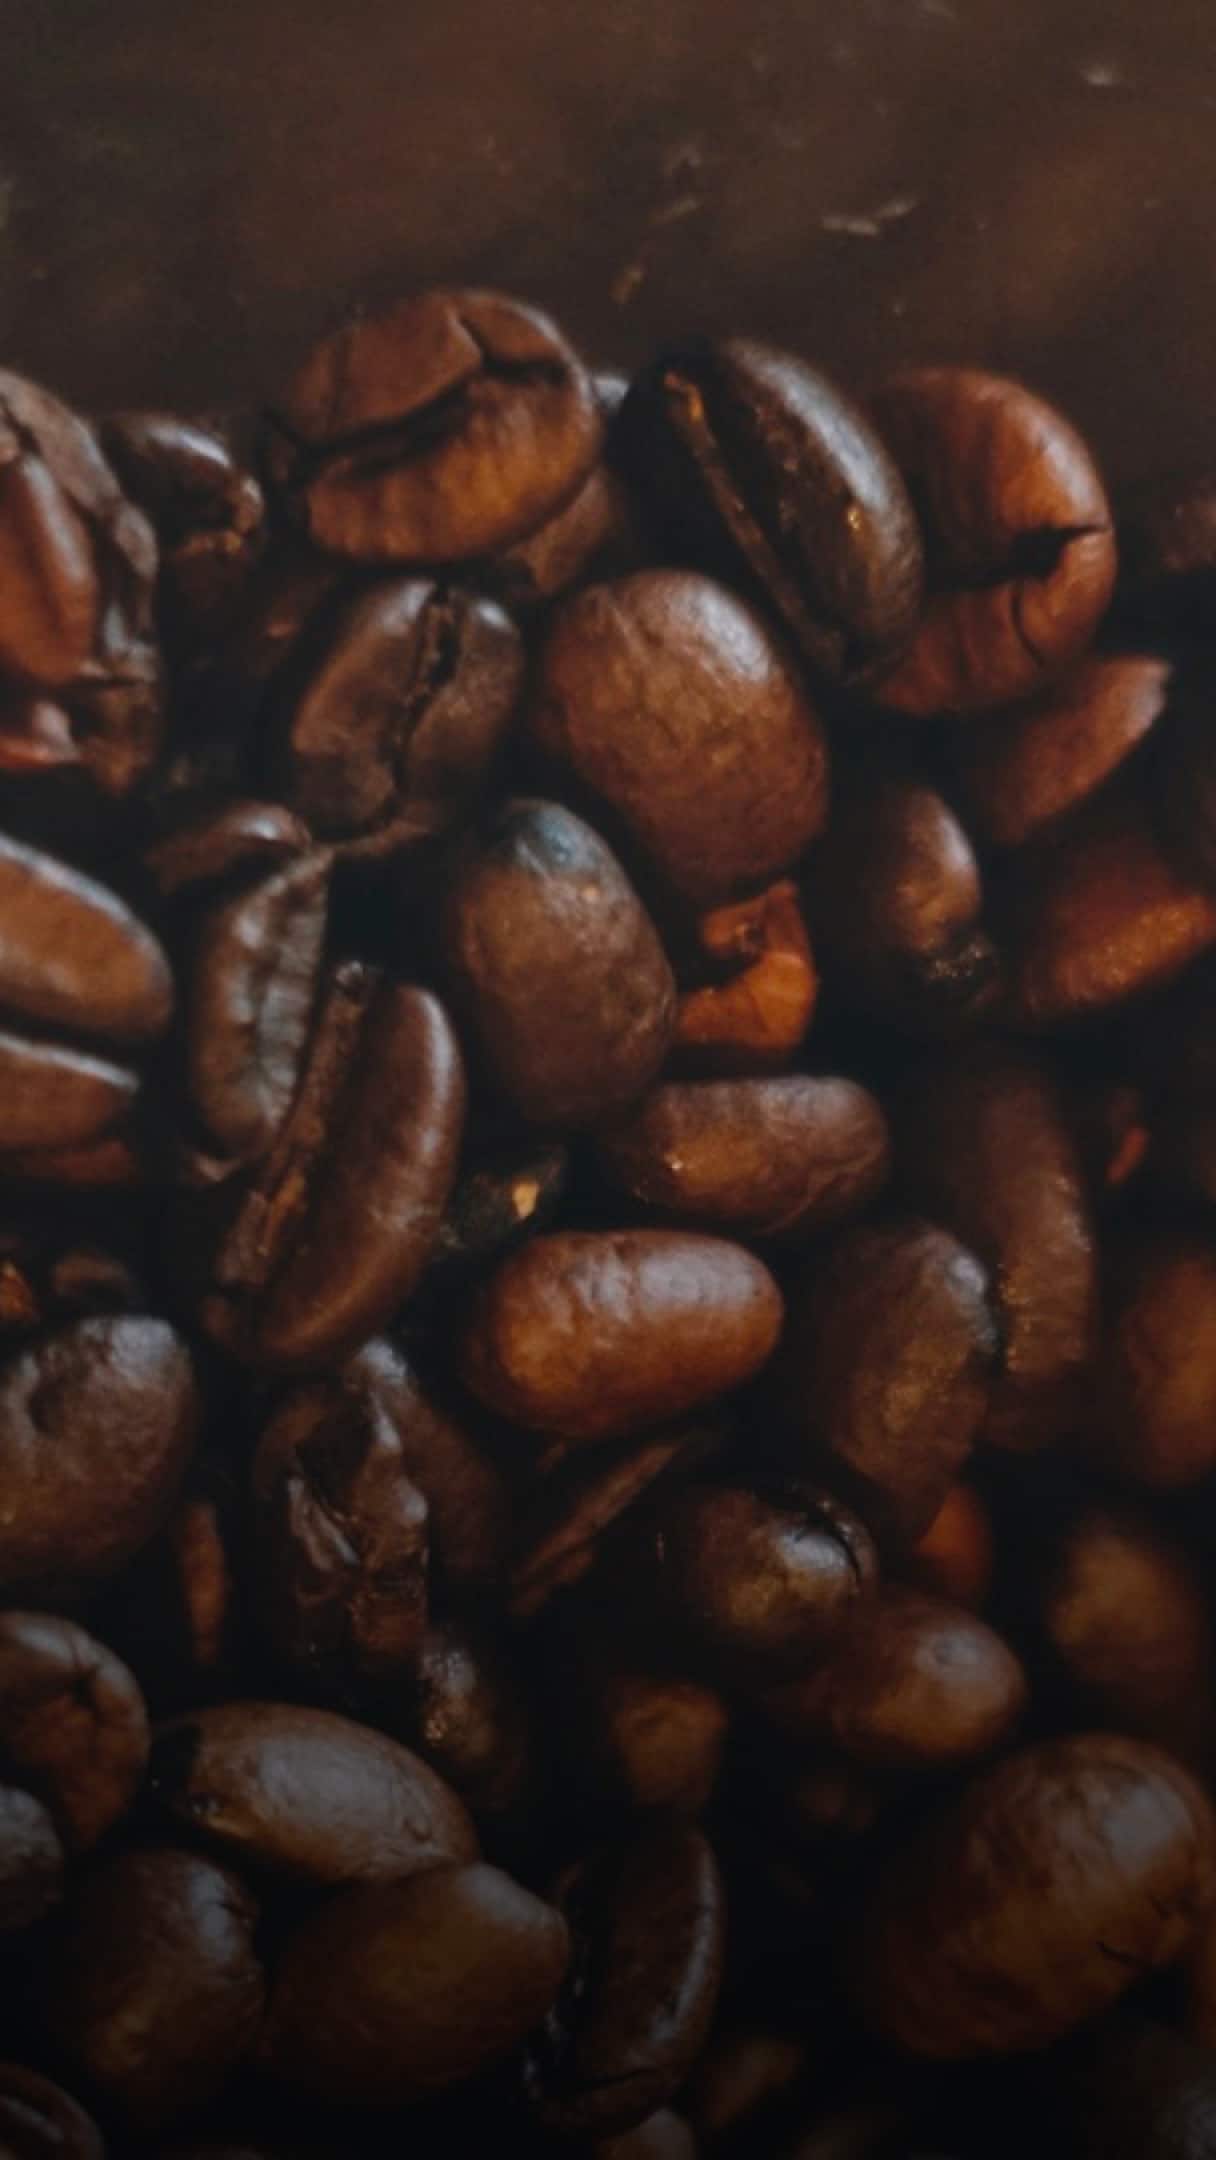 Mali by byť pražené zrná mastné? – Coffee Lounge